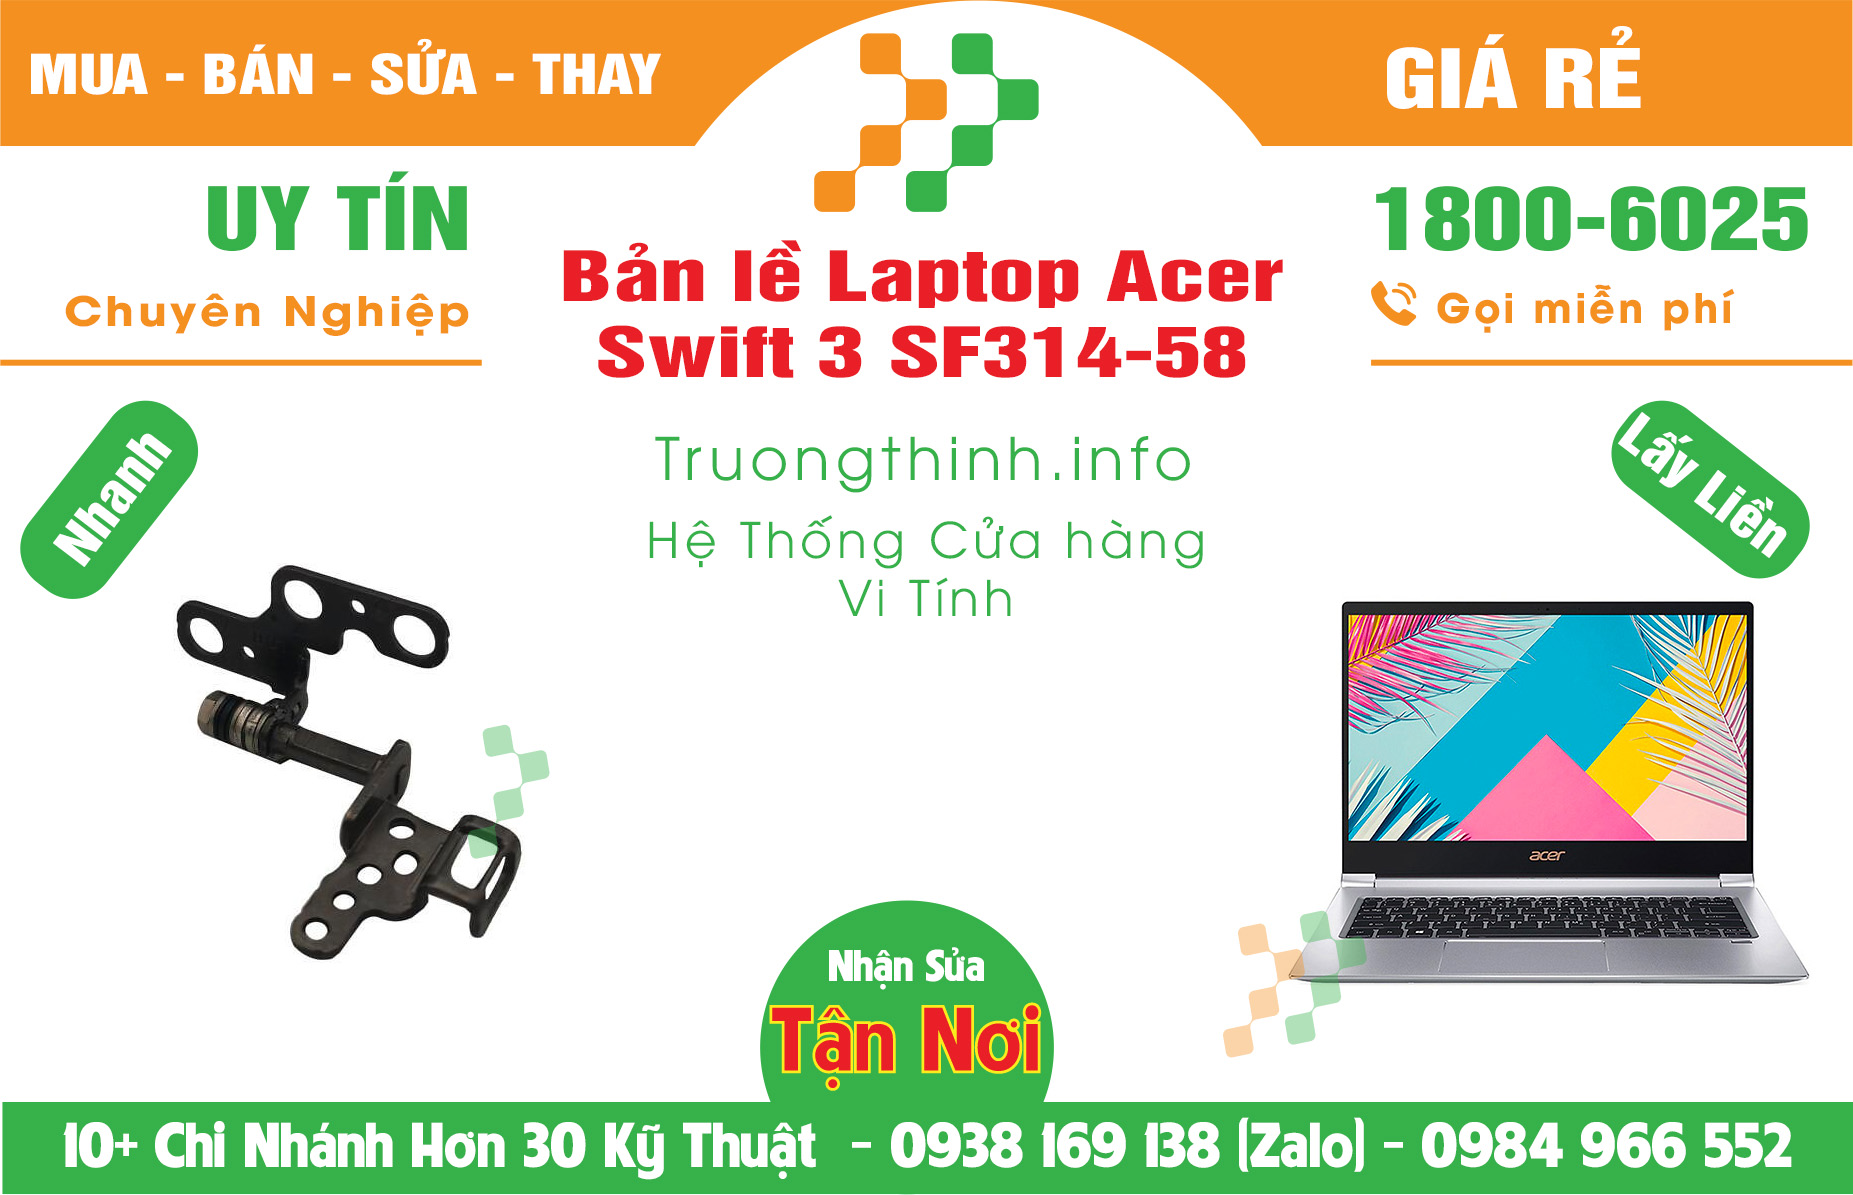 Mua Bán Bản lề Laptop Acer Swift 3 SF314-58 Giá Rẻ | Máy Tính Trường Thịnh Giá Rẻ